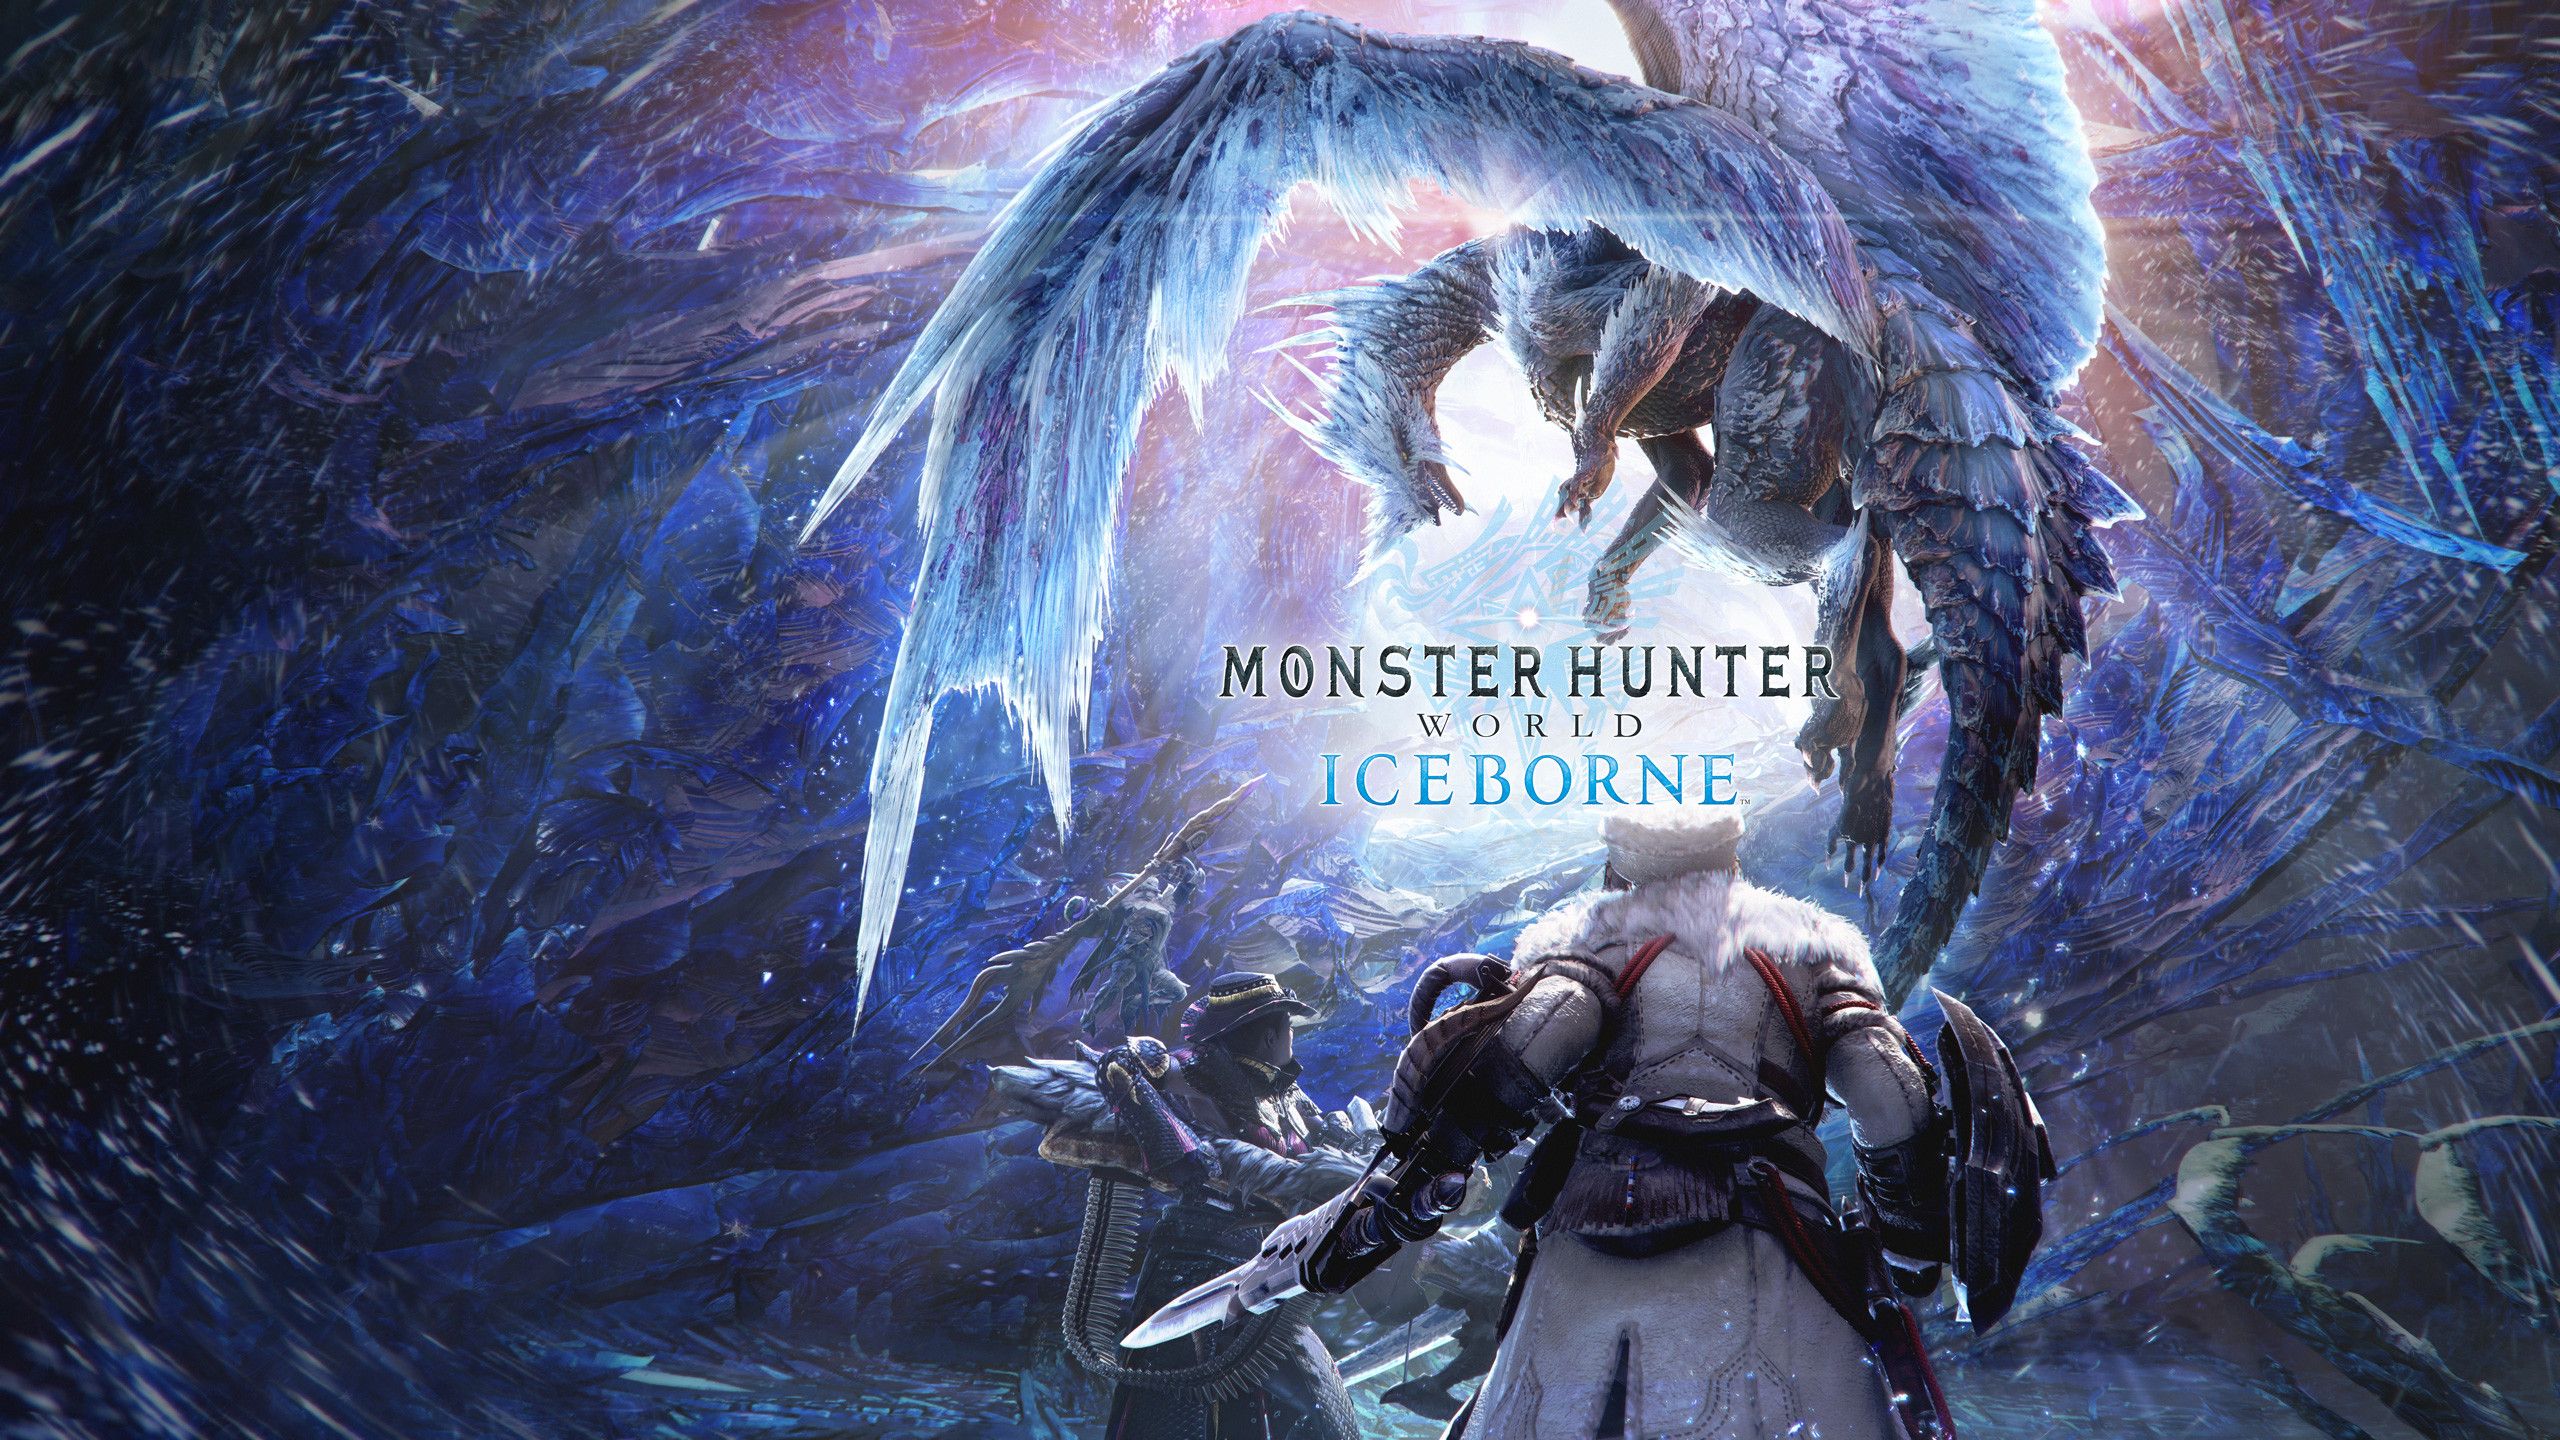 Monster Hunter World: Iceborne. Desktop wallpaper. 2560x1440